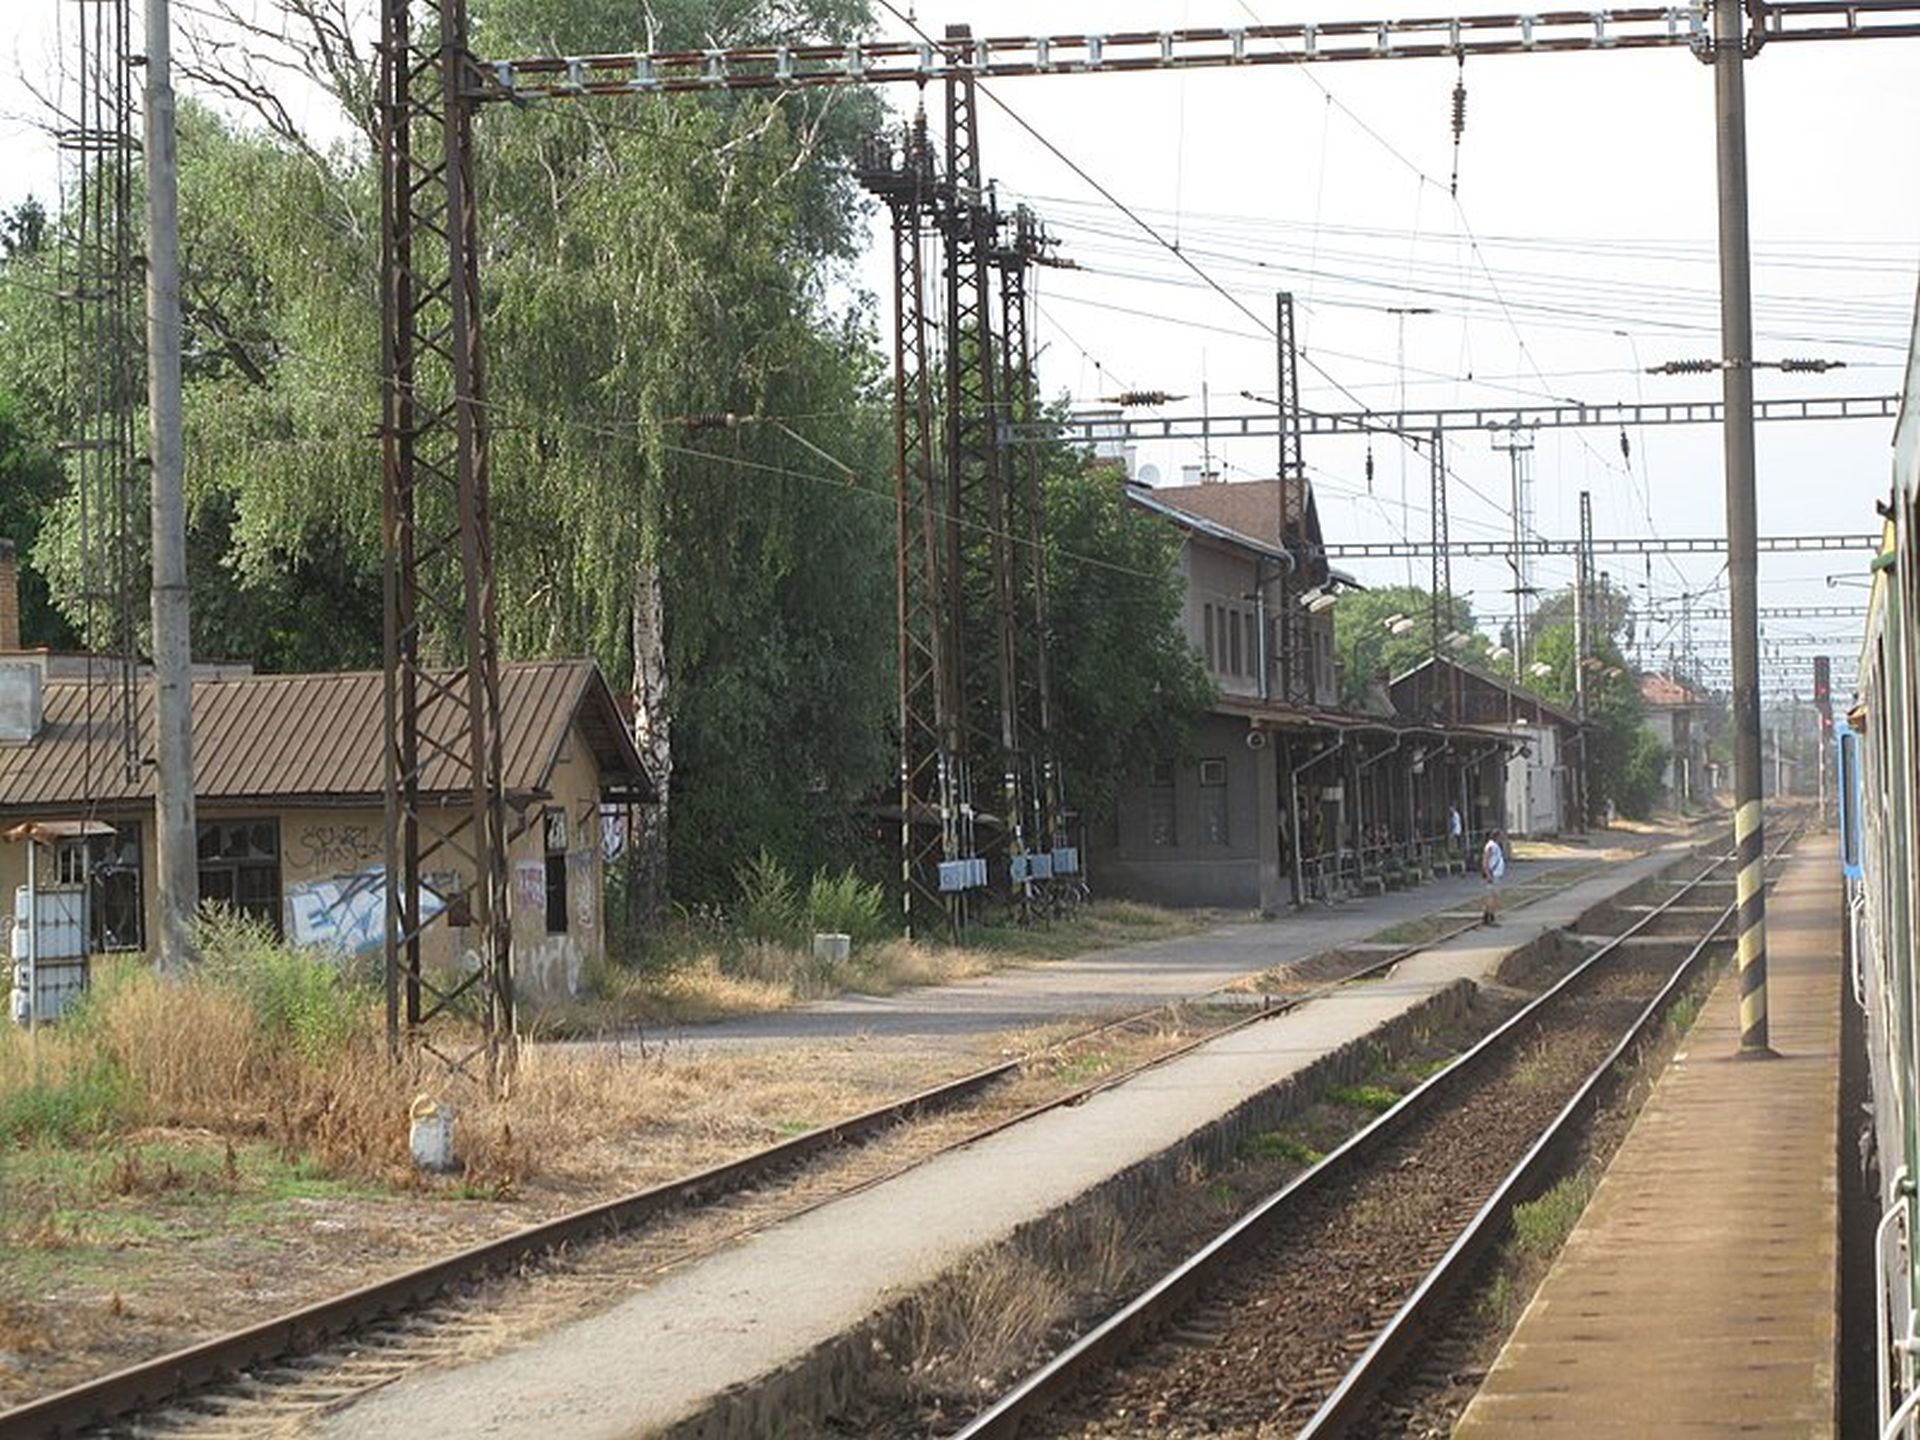 Železniční stanice Velký Osek. Foto: Dezidor / Wikimedia Commons